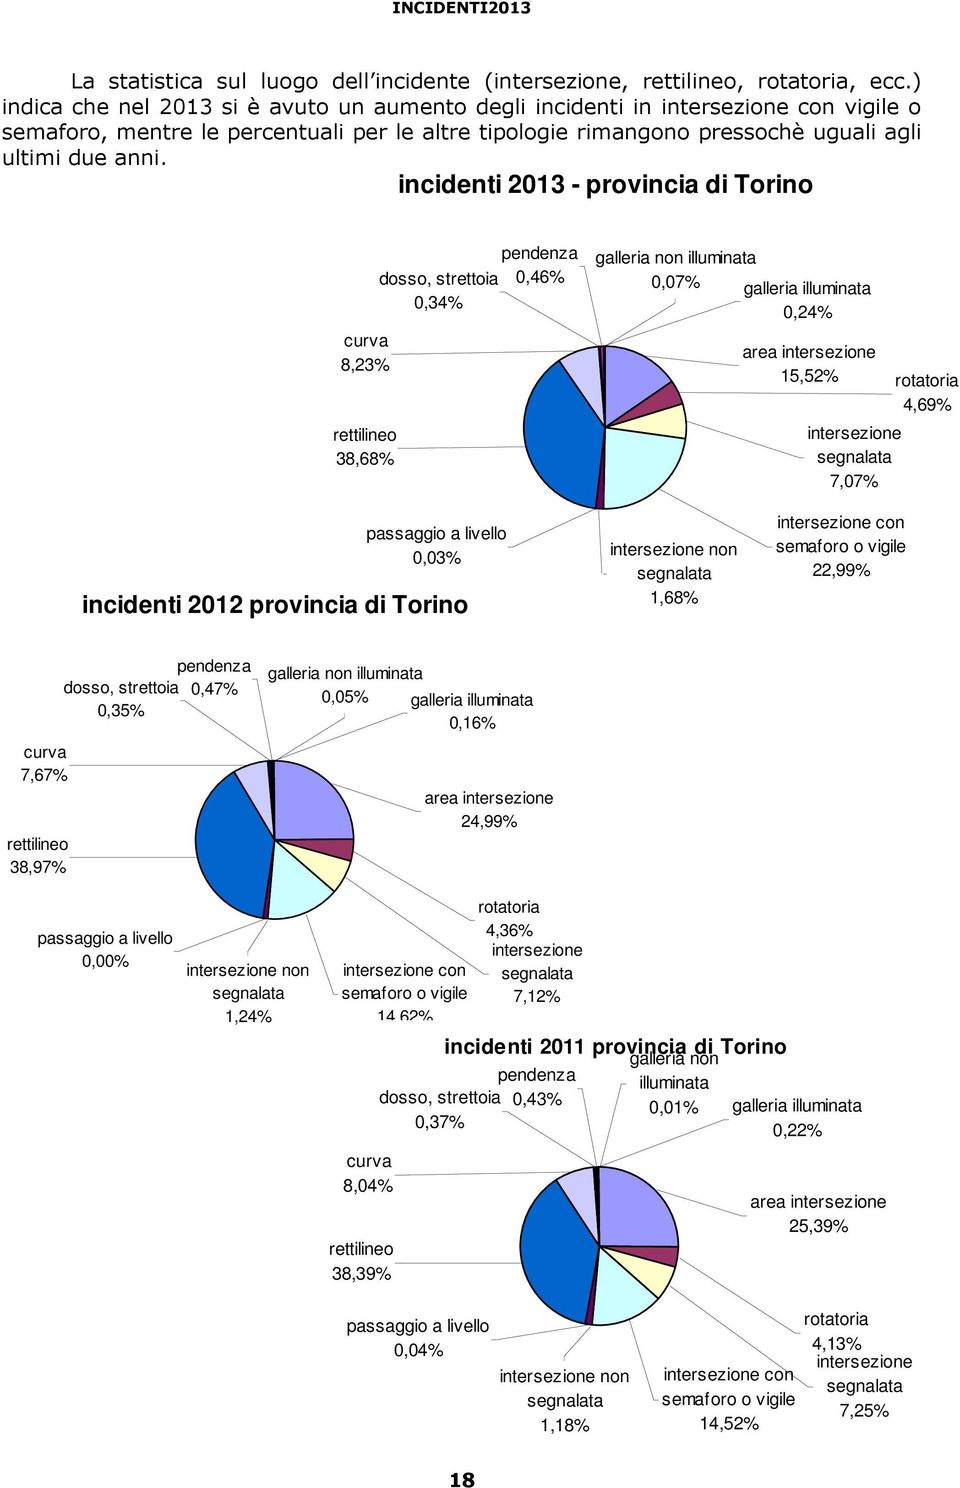 incidenti 213 - provincia di Torino curva 8,23% rettilineo 38,68% dosso, strettoia,34% pendenza,46% galleria non illuminata,7% galleria illuminata,24% area intersezione 15,52% rotatoria 4,69%